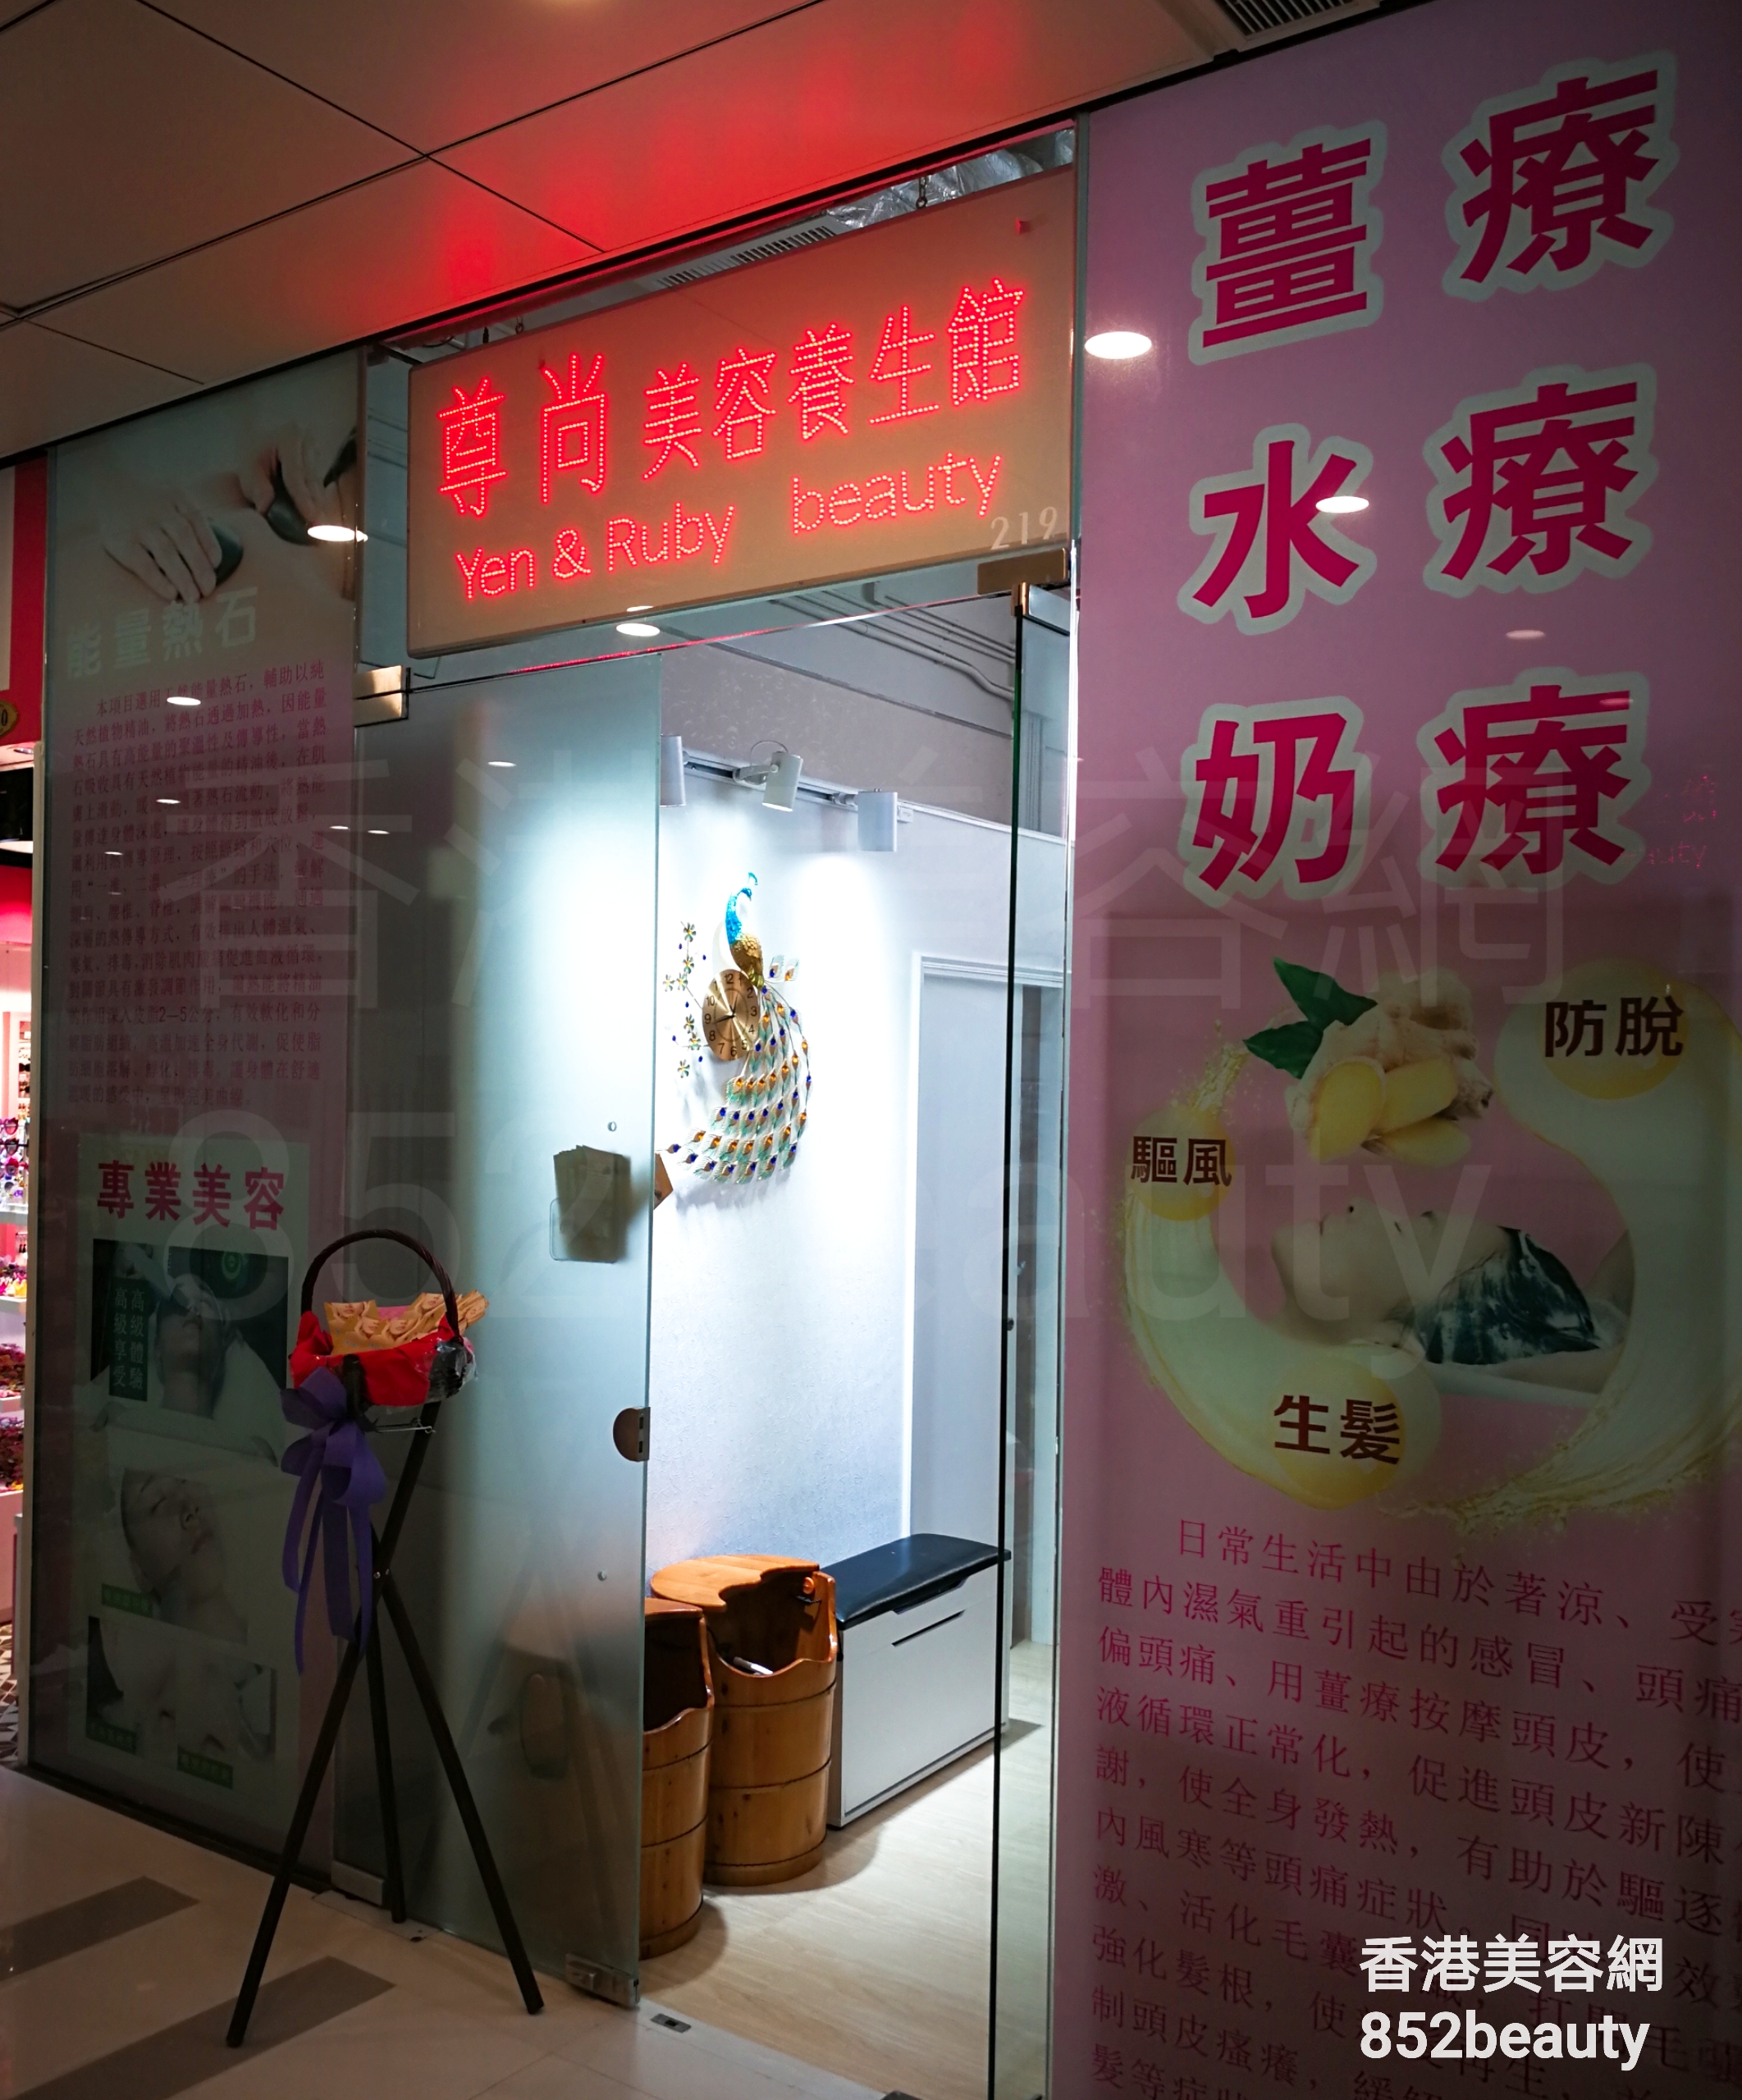 香港美容網 Hong Kong Beauty Salon 美容院 / 美容師: 尊尚 美容養生館